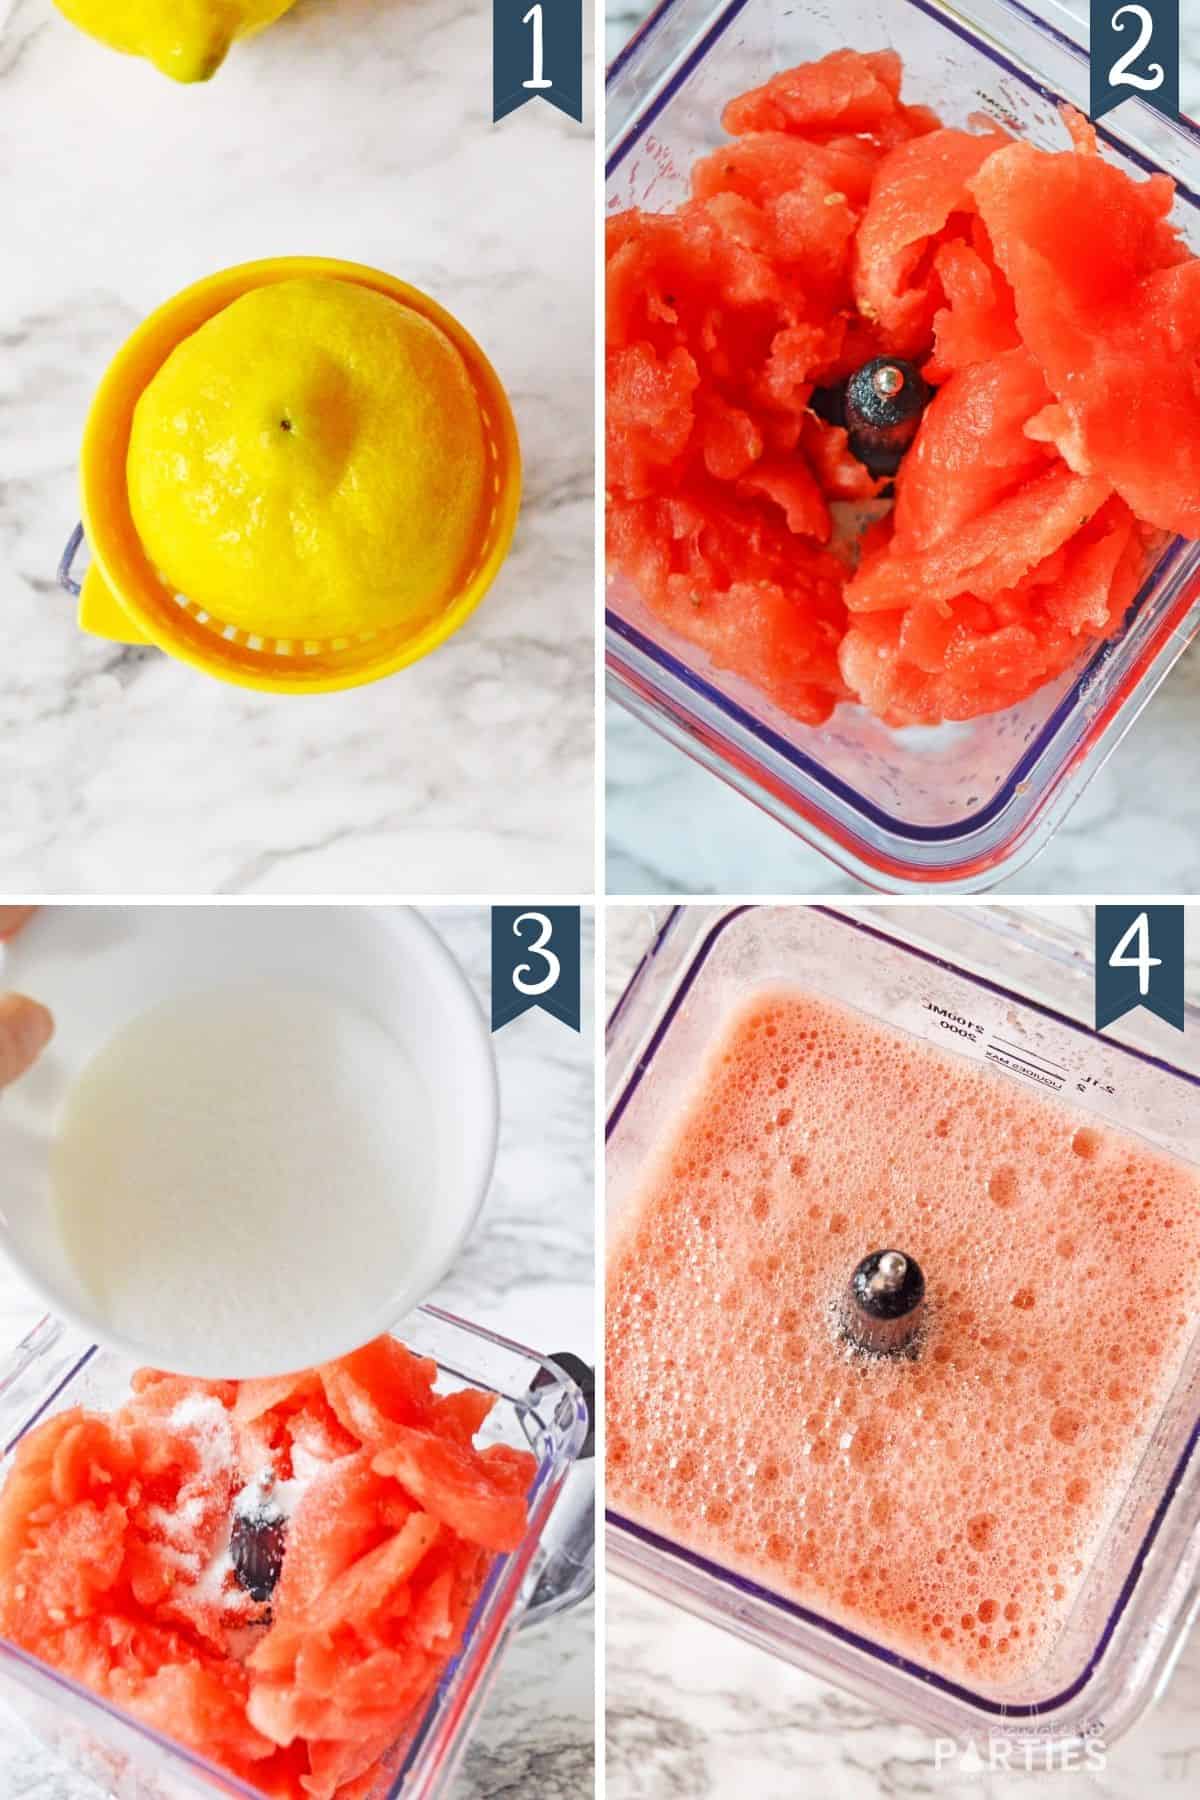 How to Make Watermelon Lemonade Steps 1 through 4.